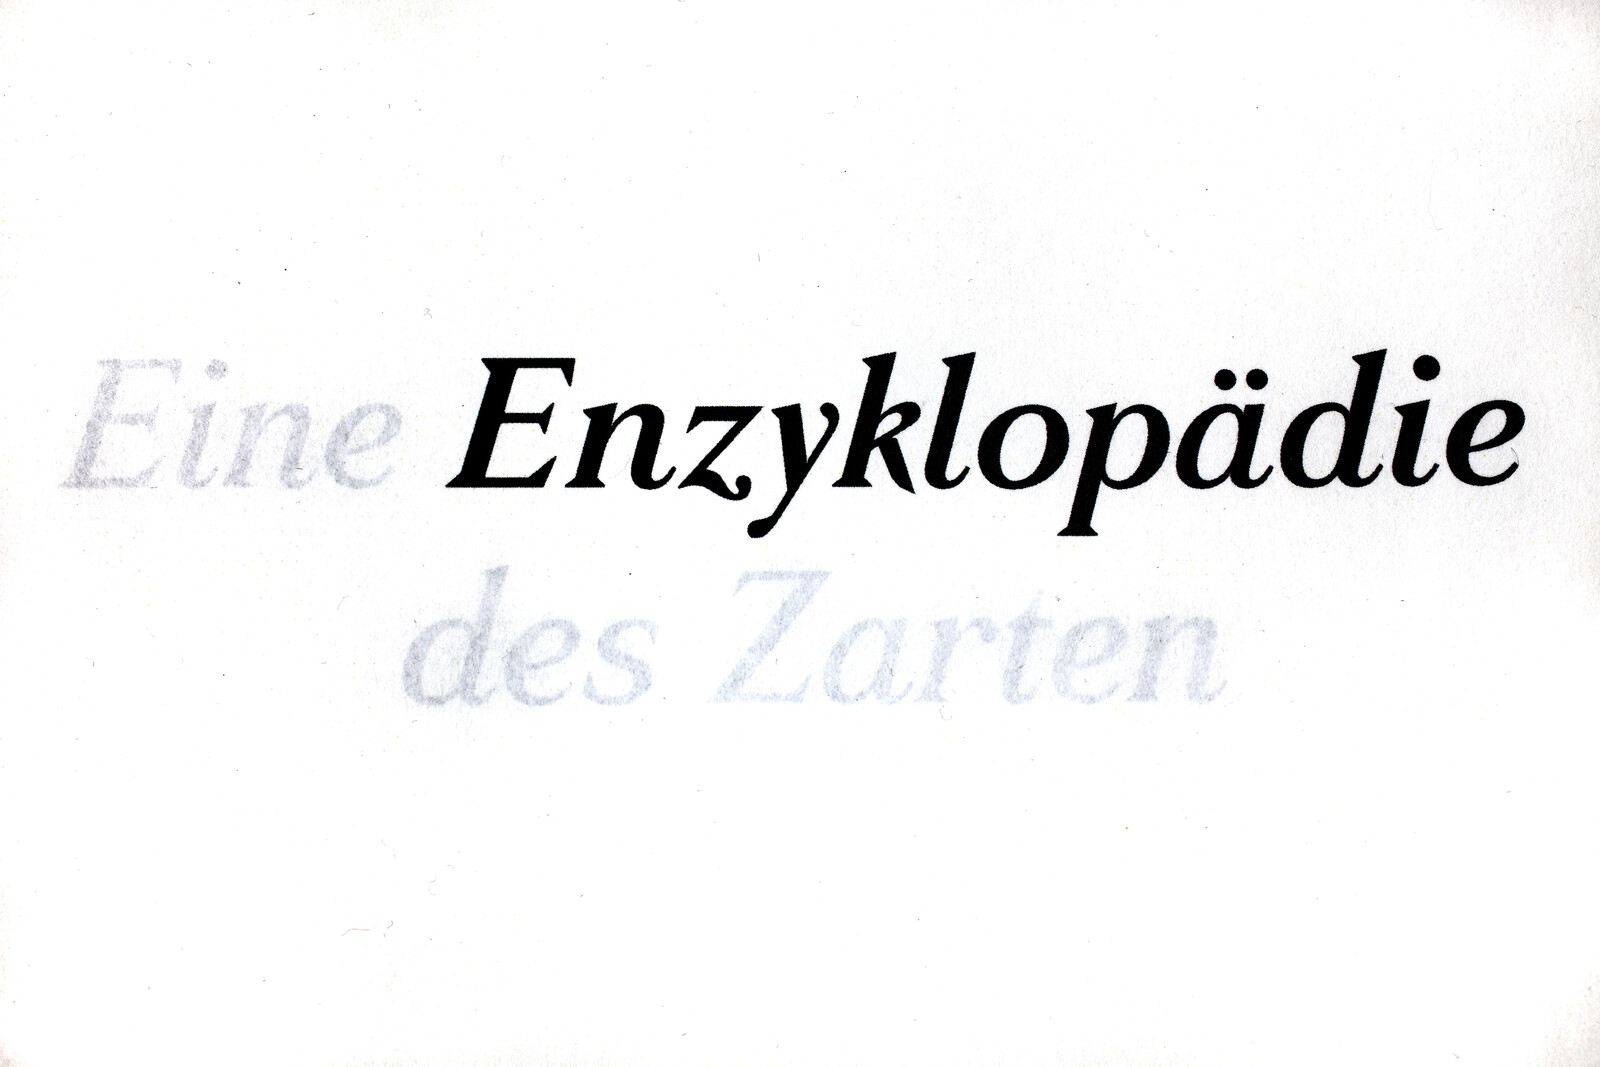 Berührendes von Anne Brannys über die Enzyklopädie des Zarten am 28.1., René Moritz